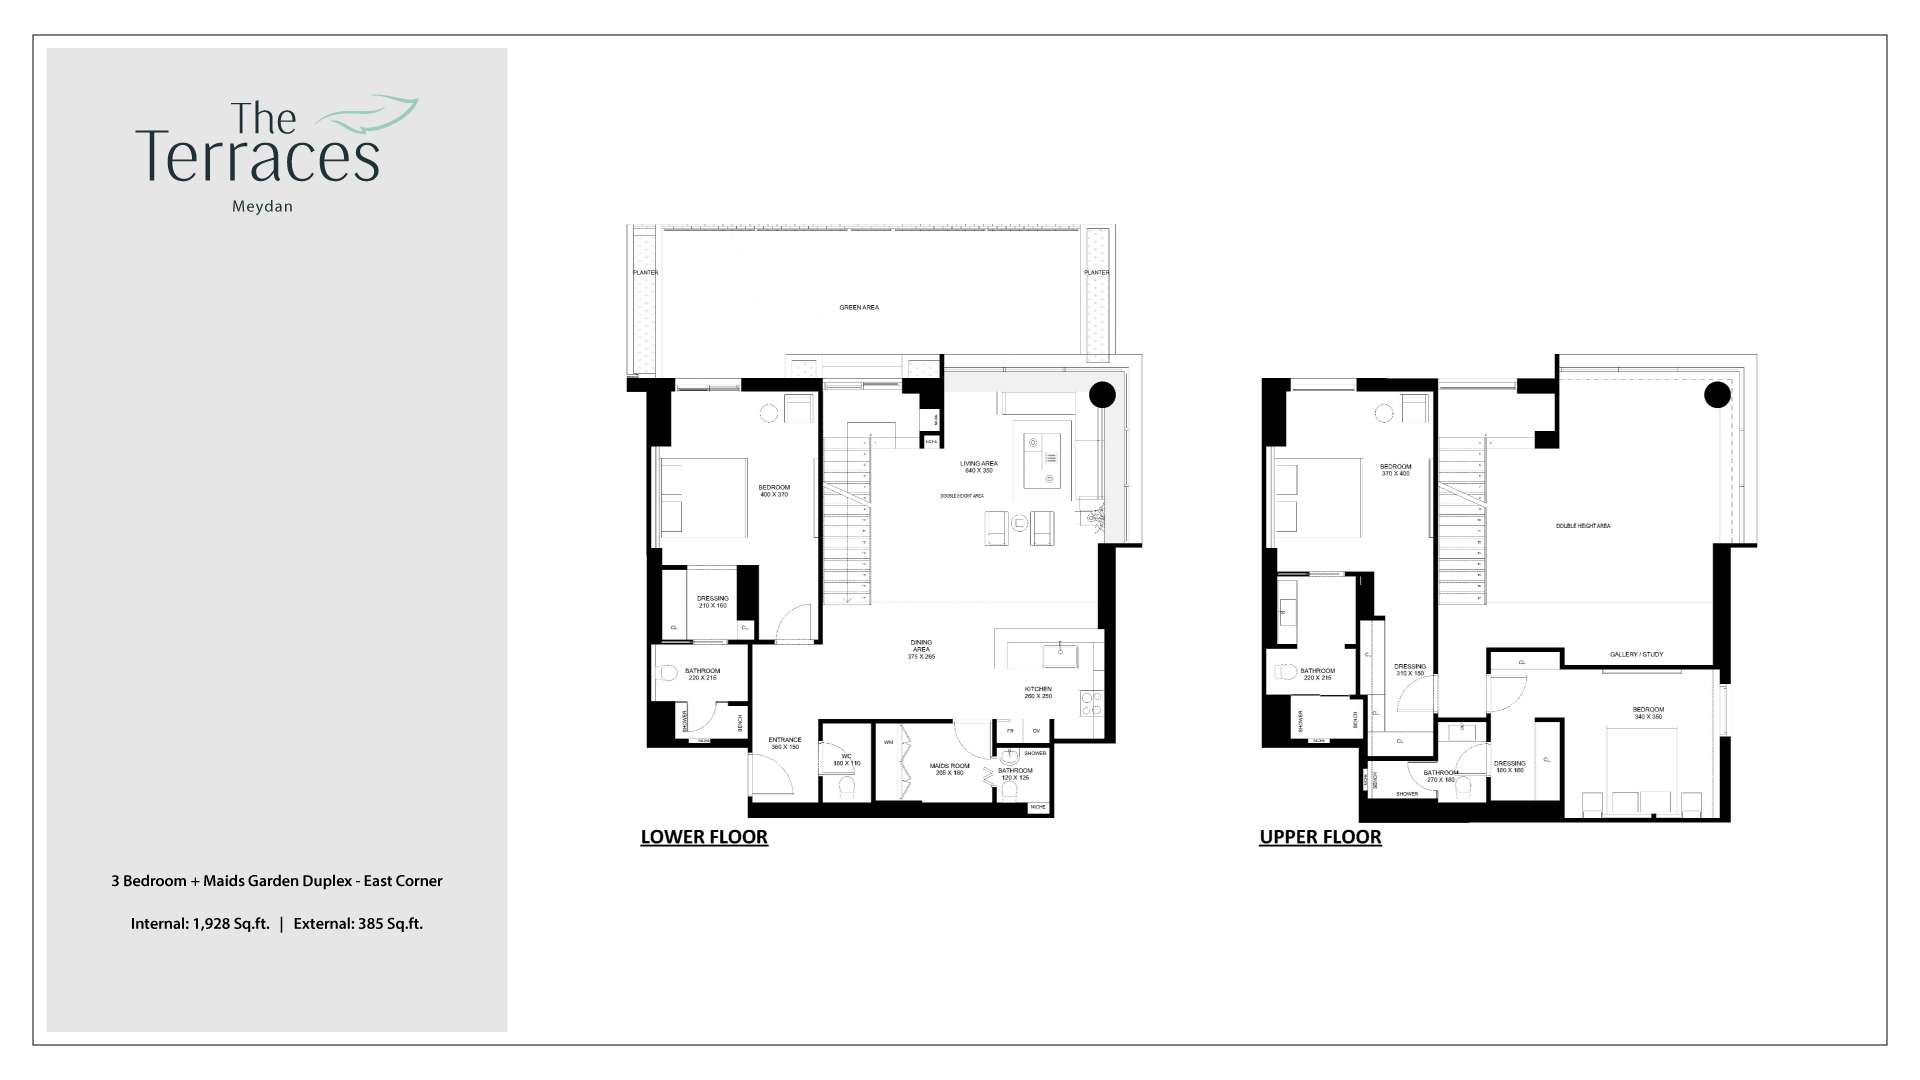 The Terraces 3 Bedroom + Maid Garden Duplex East Corner Floorplan